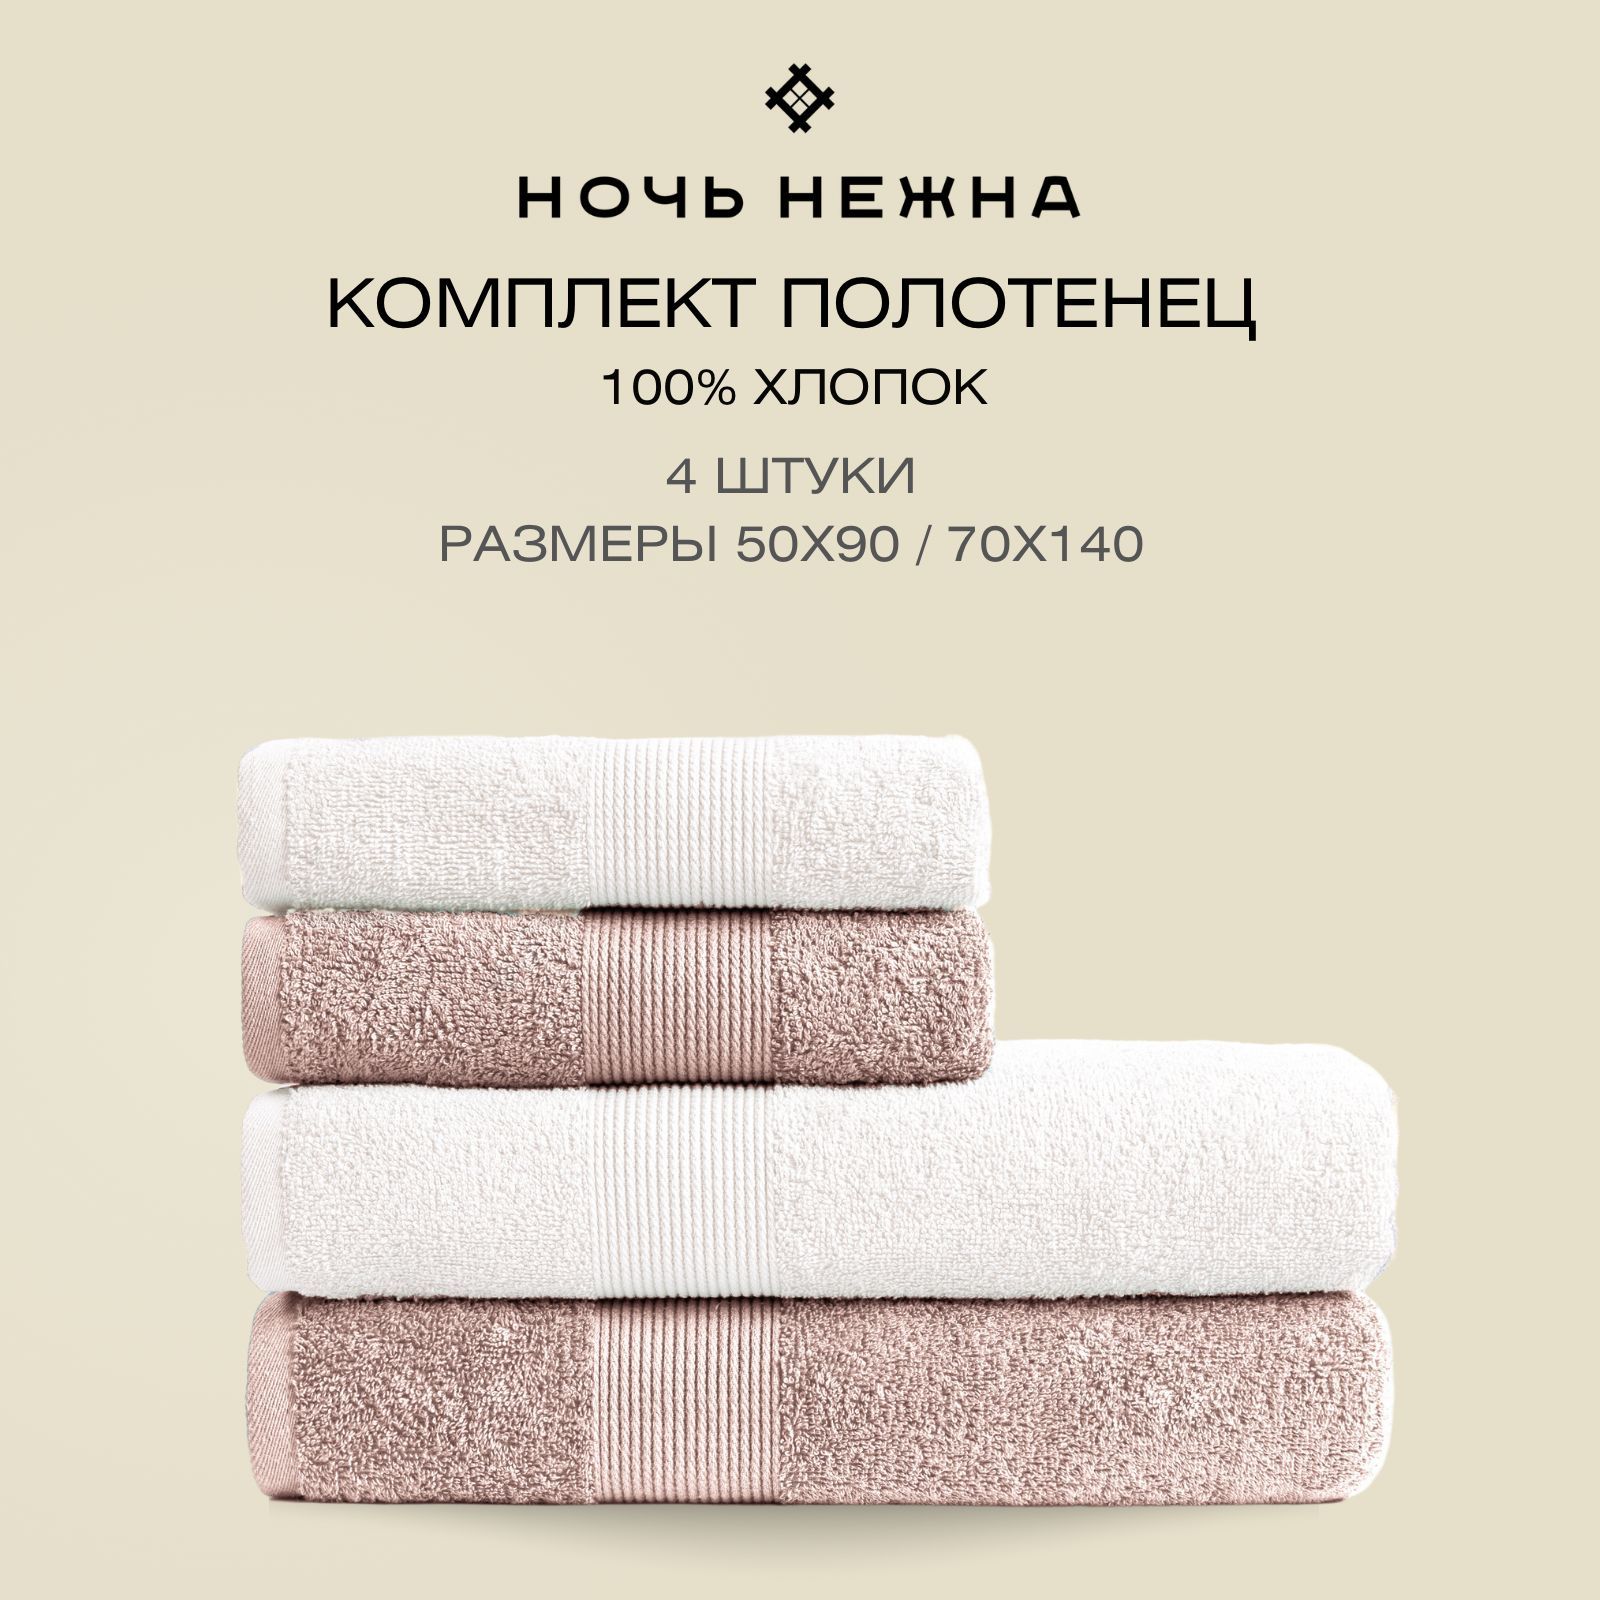 Нежные полотенца. Плотность полотенца. Реклама полотенца ночь нежна.